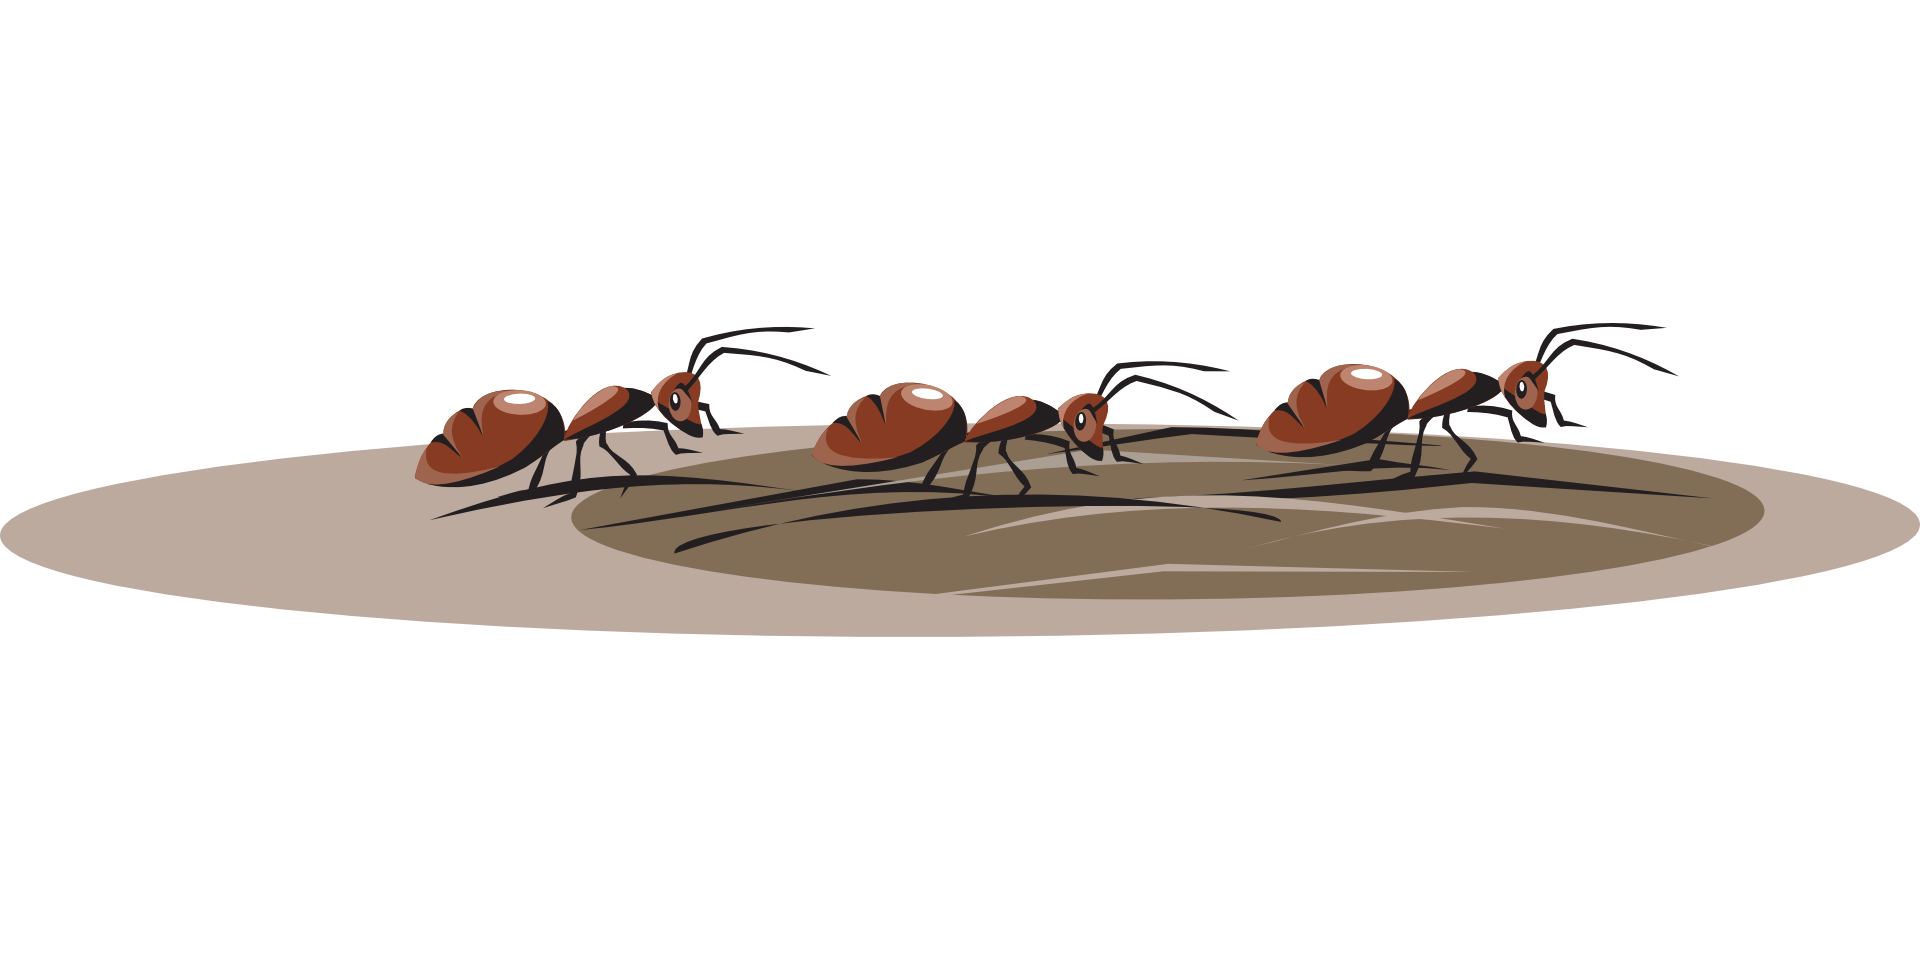 Картинки муравья на прозрачном фоне. Муравьи ползут. Муравей бежит. Муравьи идут. Муравей несет.